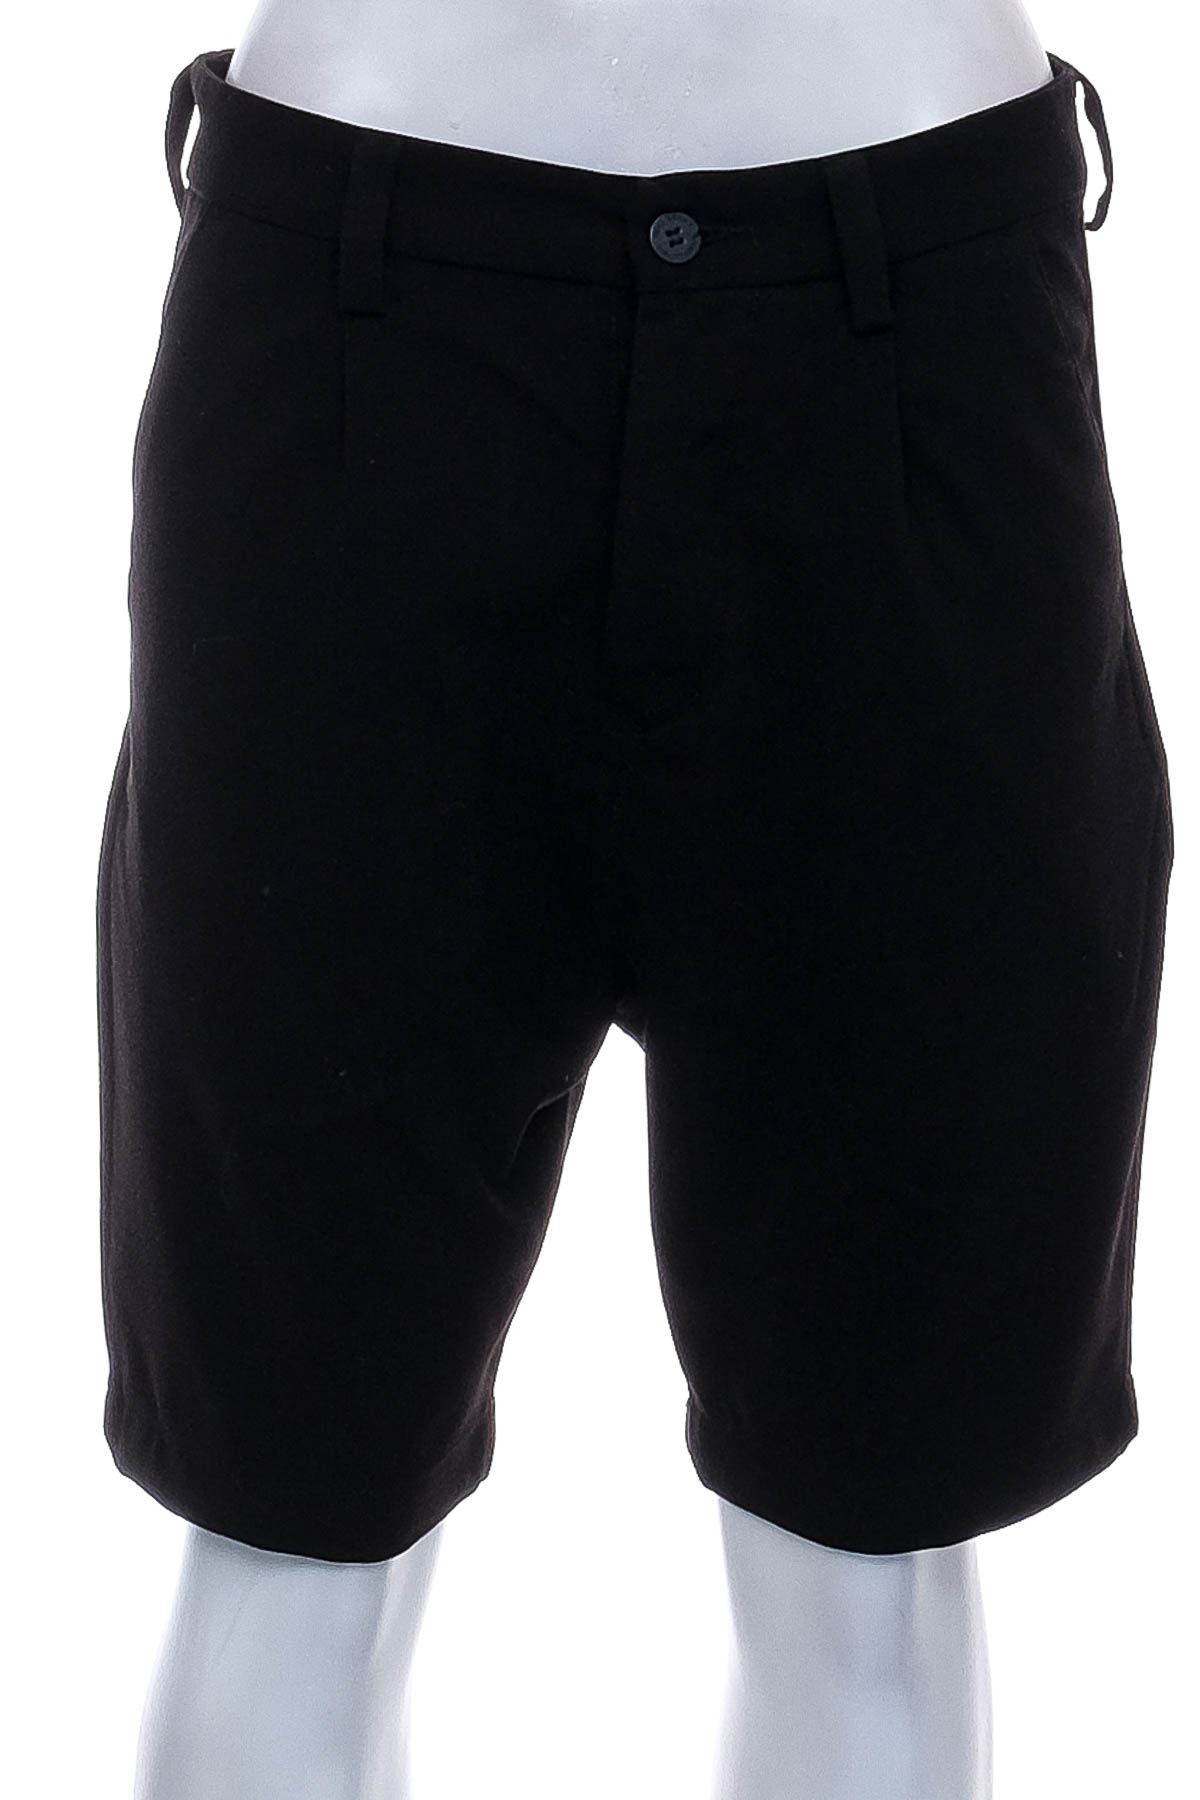 Men's shorts - Pull & Bear - 0